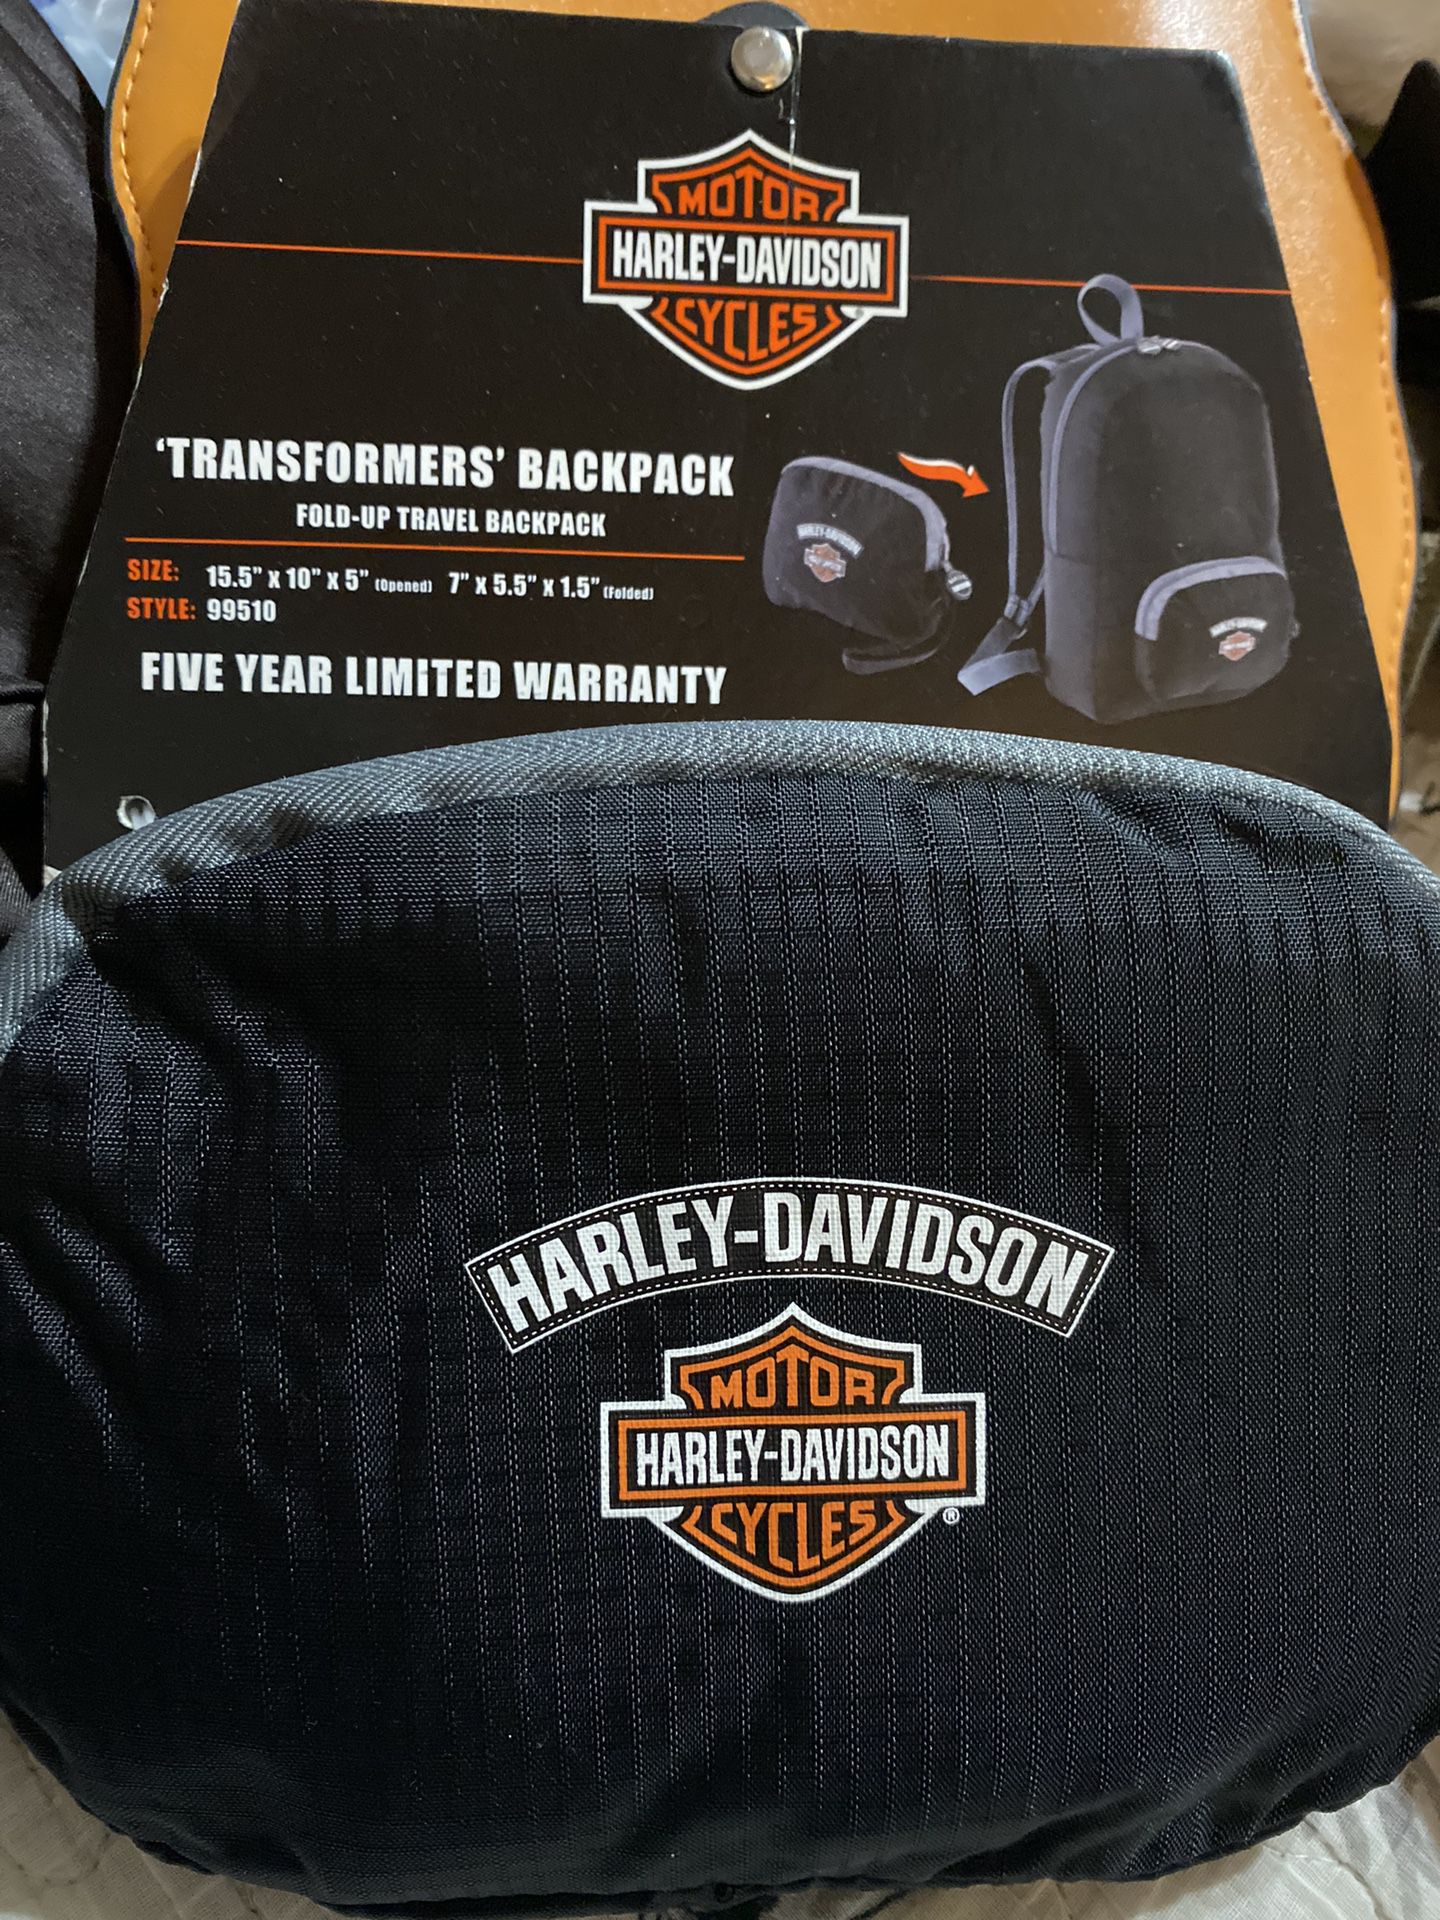 New Harley Davidson Transformers Backpack (fold Up Travel Backpack)